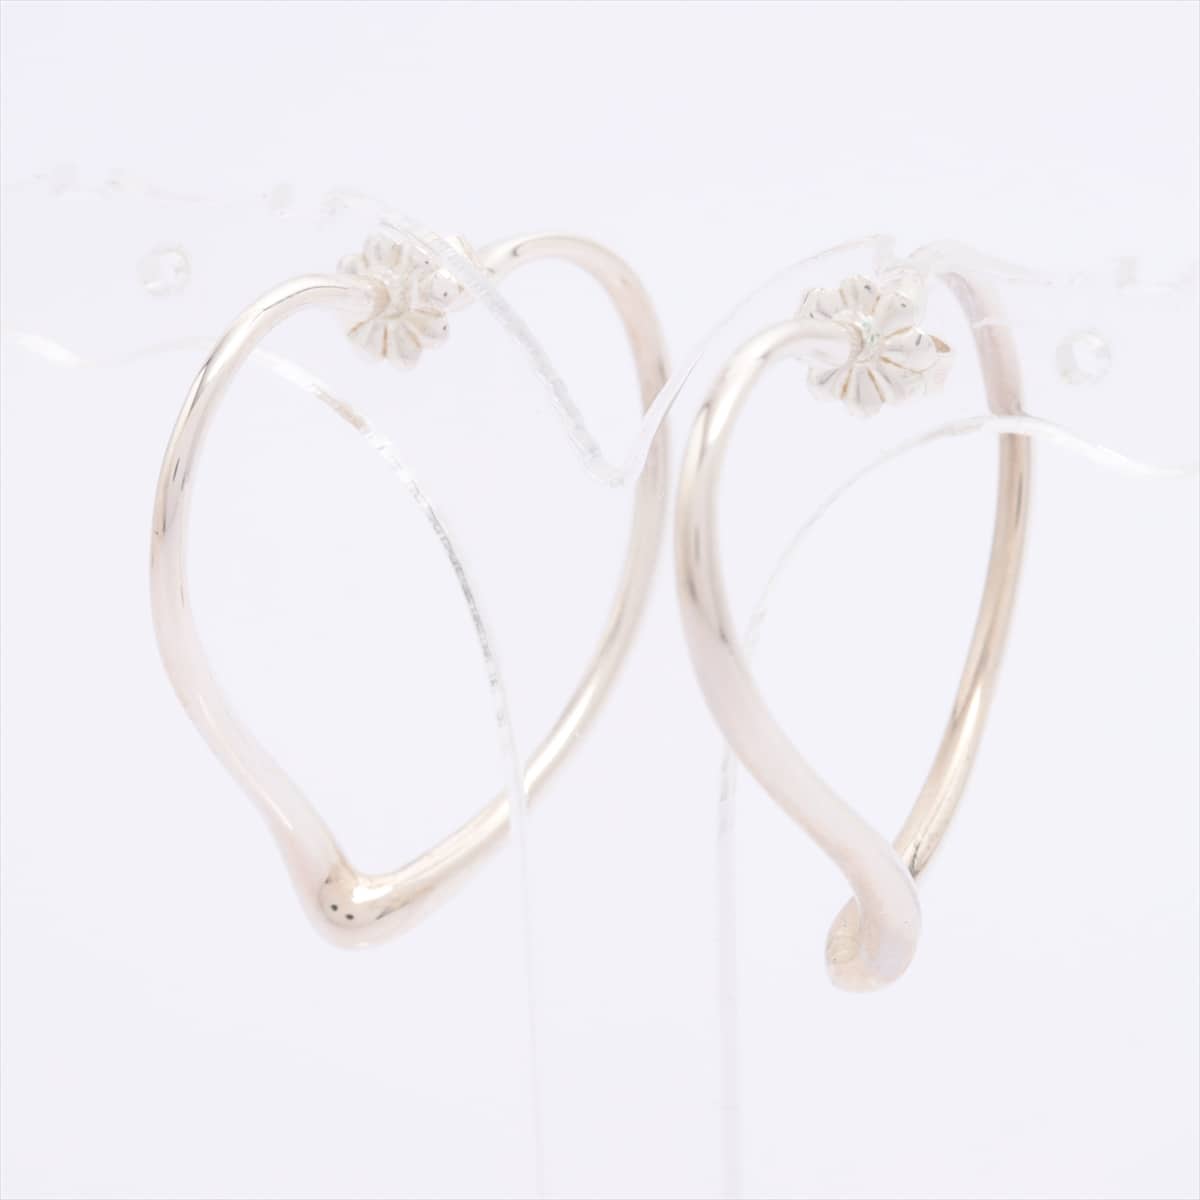 Tiffany Open Heart Piercing jewelry (for both ears) 925 5.9g Silver